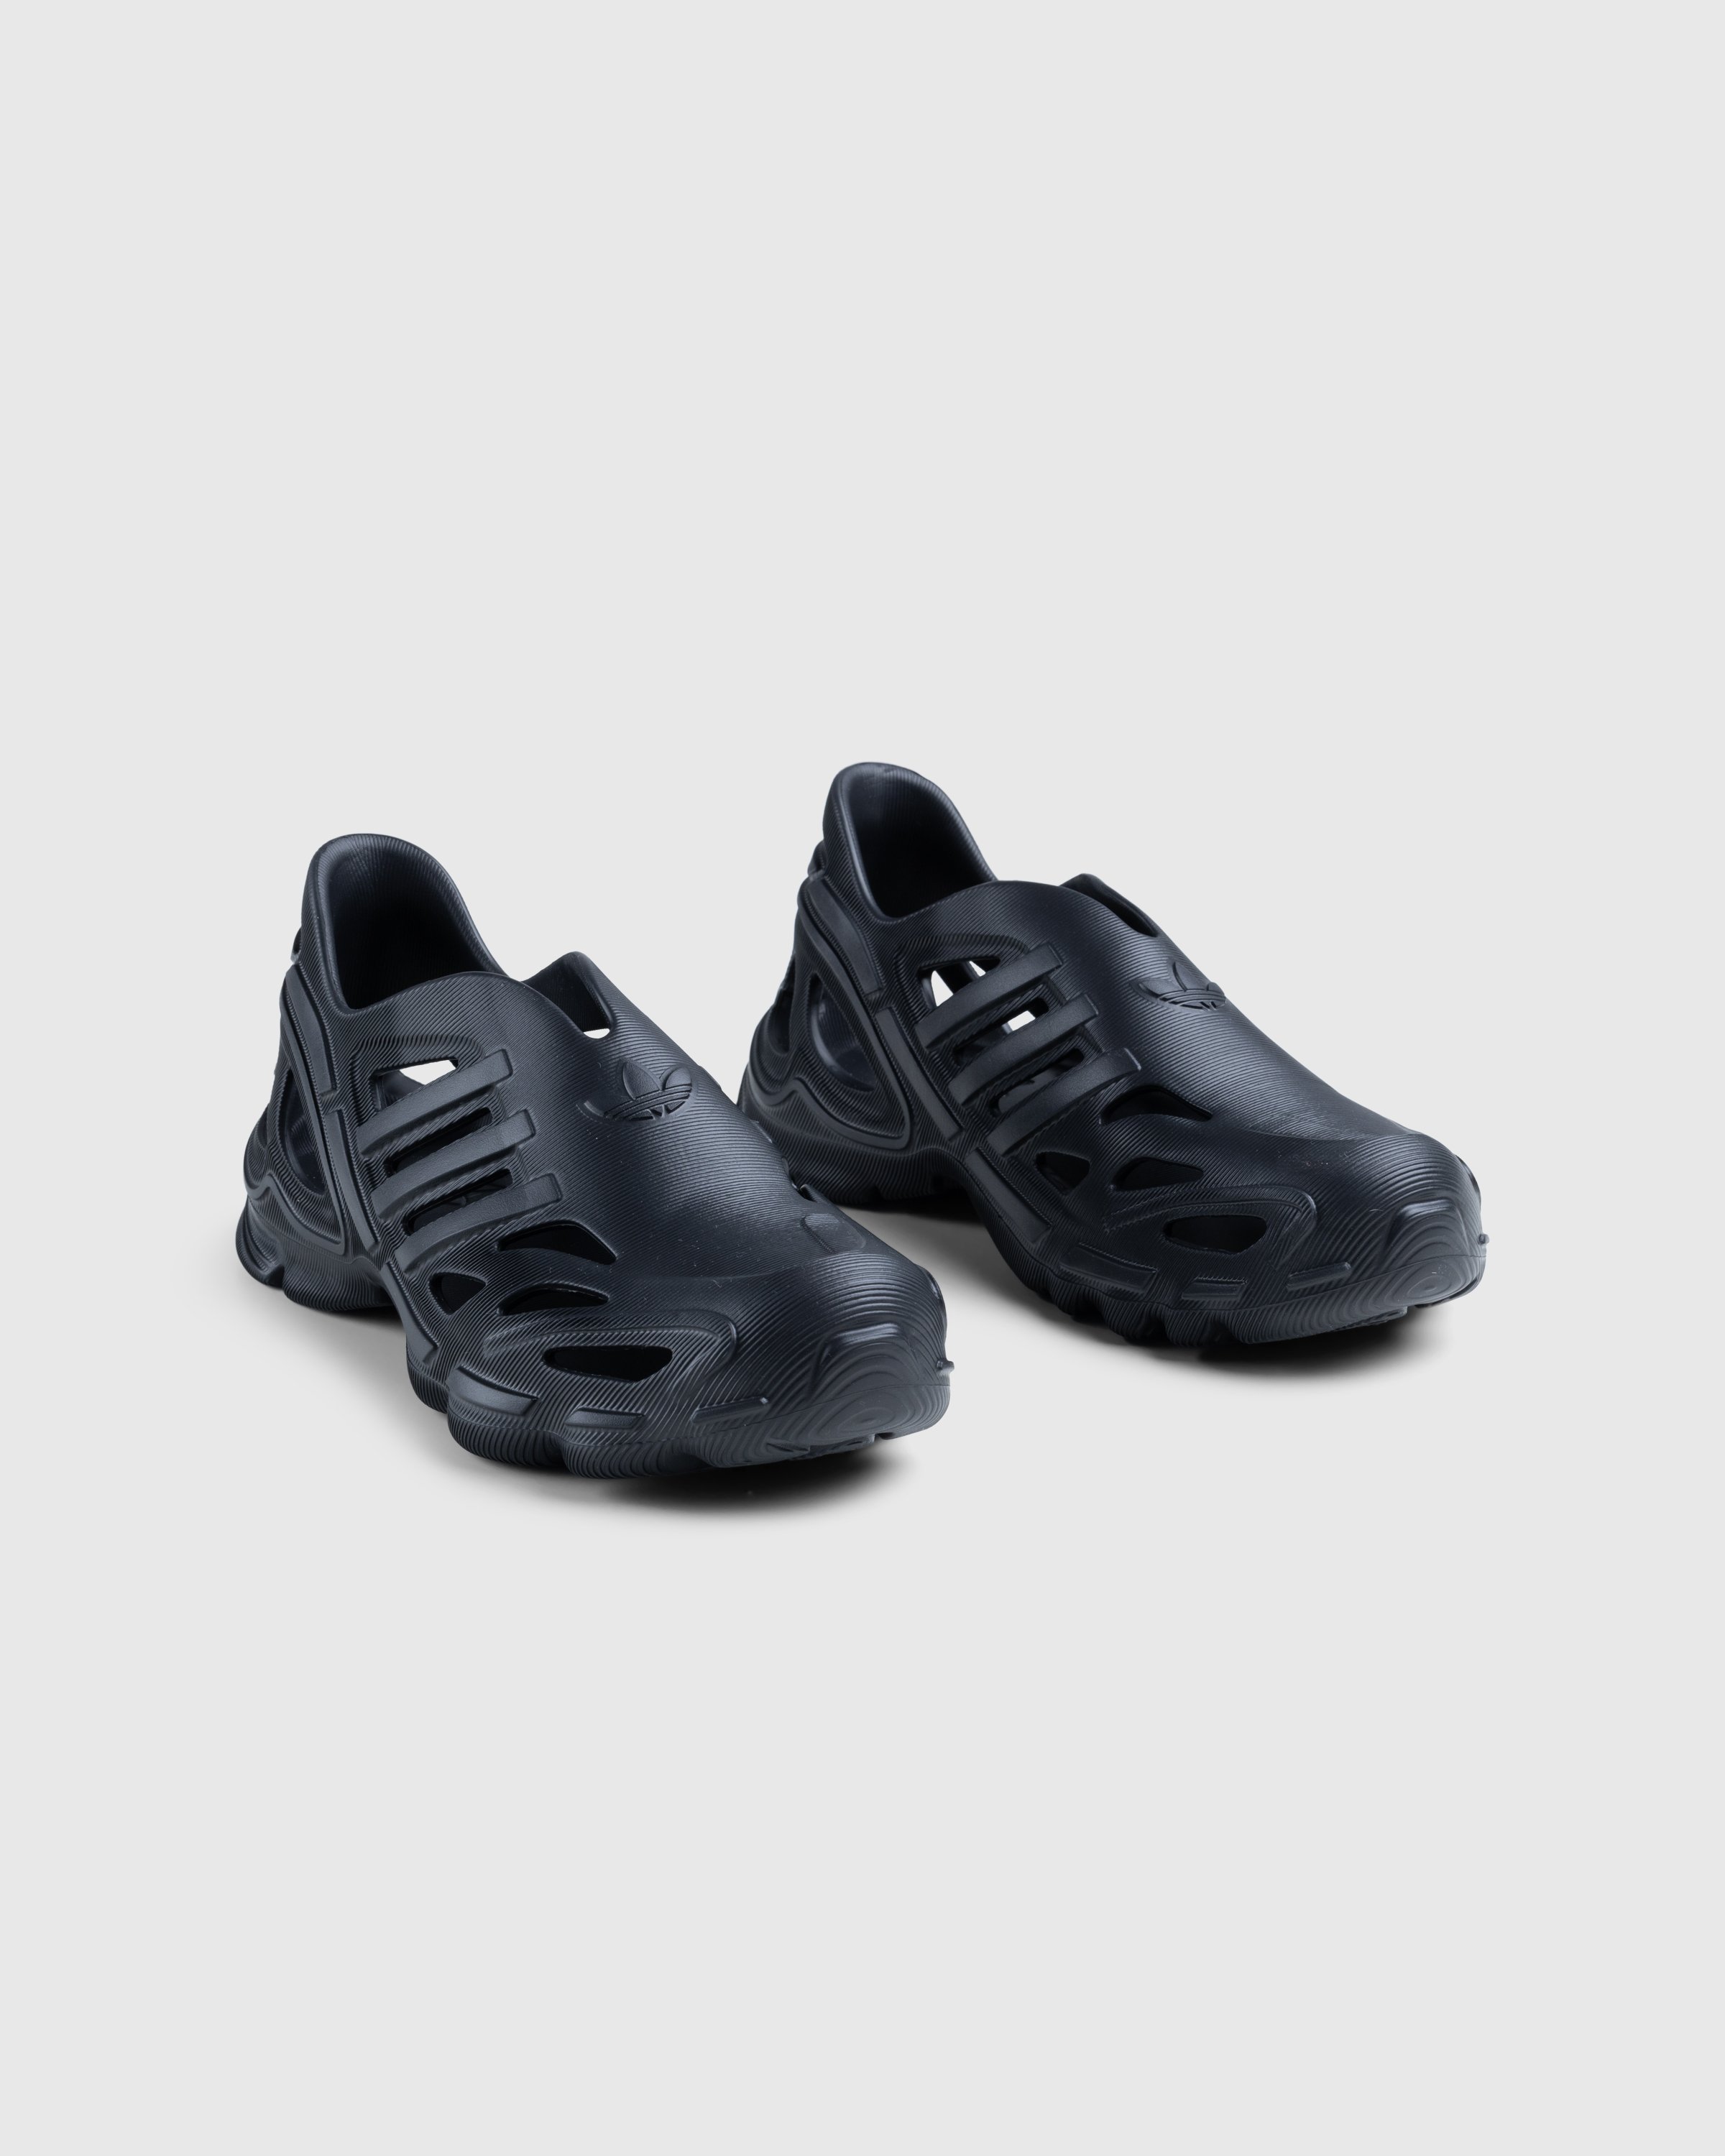 Adidas - Adifom Supernova Core Black - Footwear - Black - Image 3